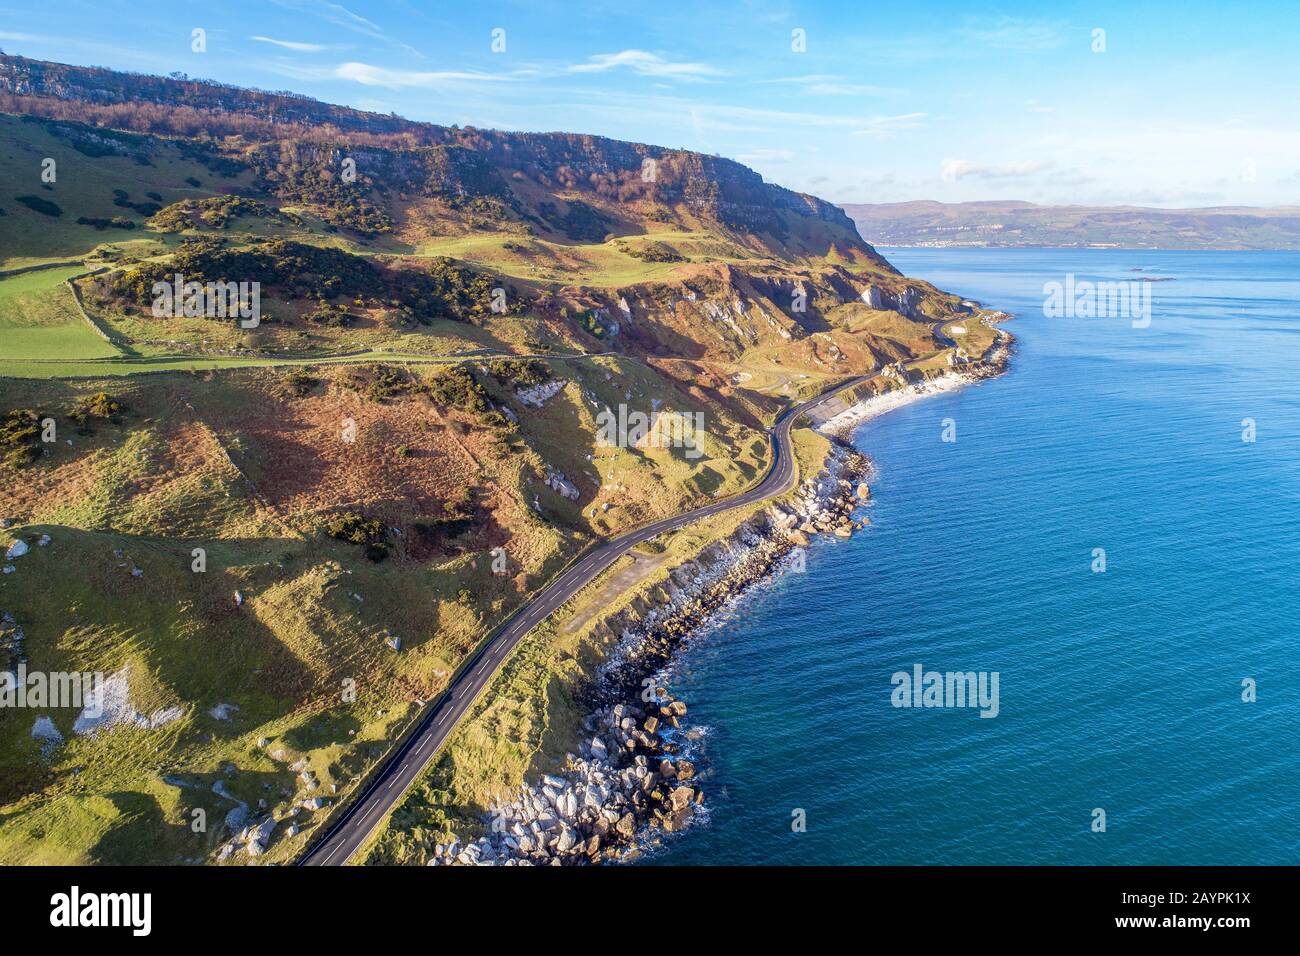 Côte atlantique de l'Irlande du Nord, Antrim Coast Road, alias Causeway Coastal route, L'Une des routes côtières les plus pittoresques d'Europe. Vue aérienne Banque D'Images